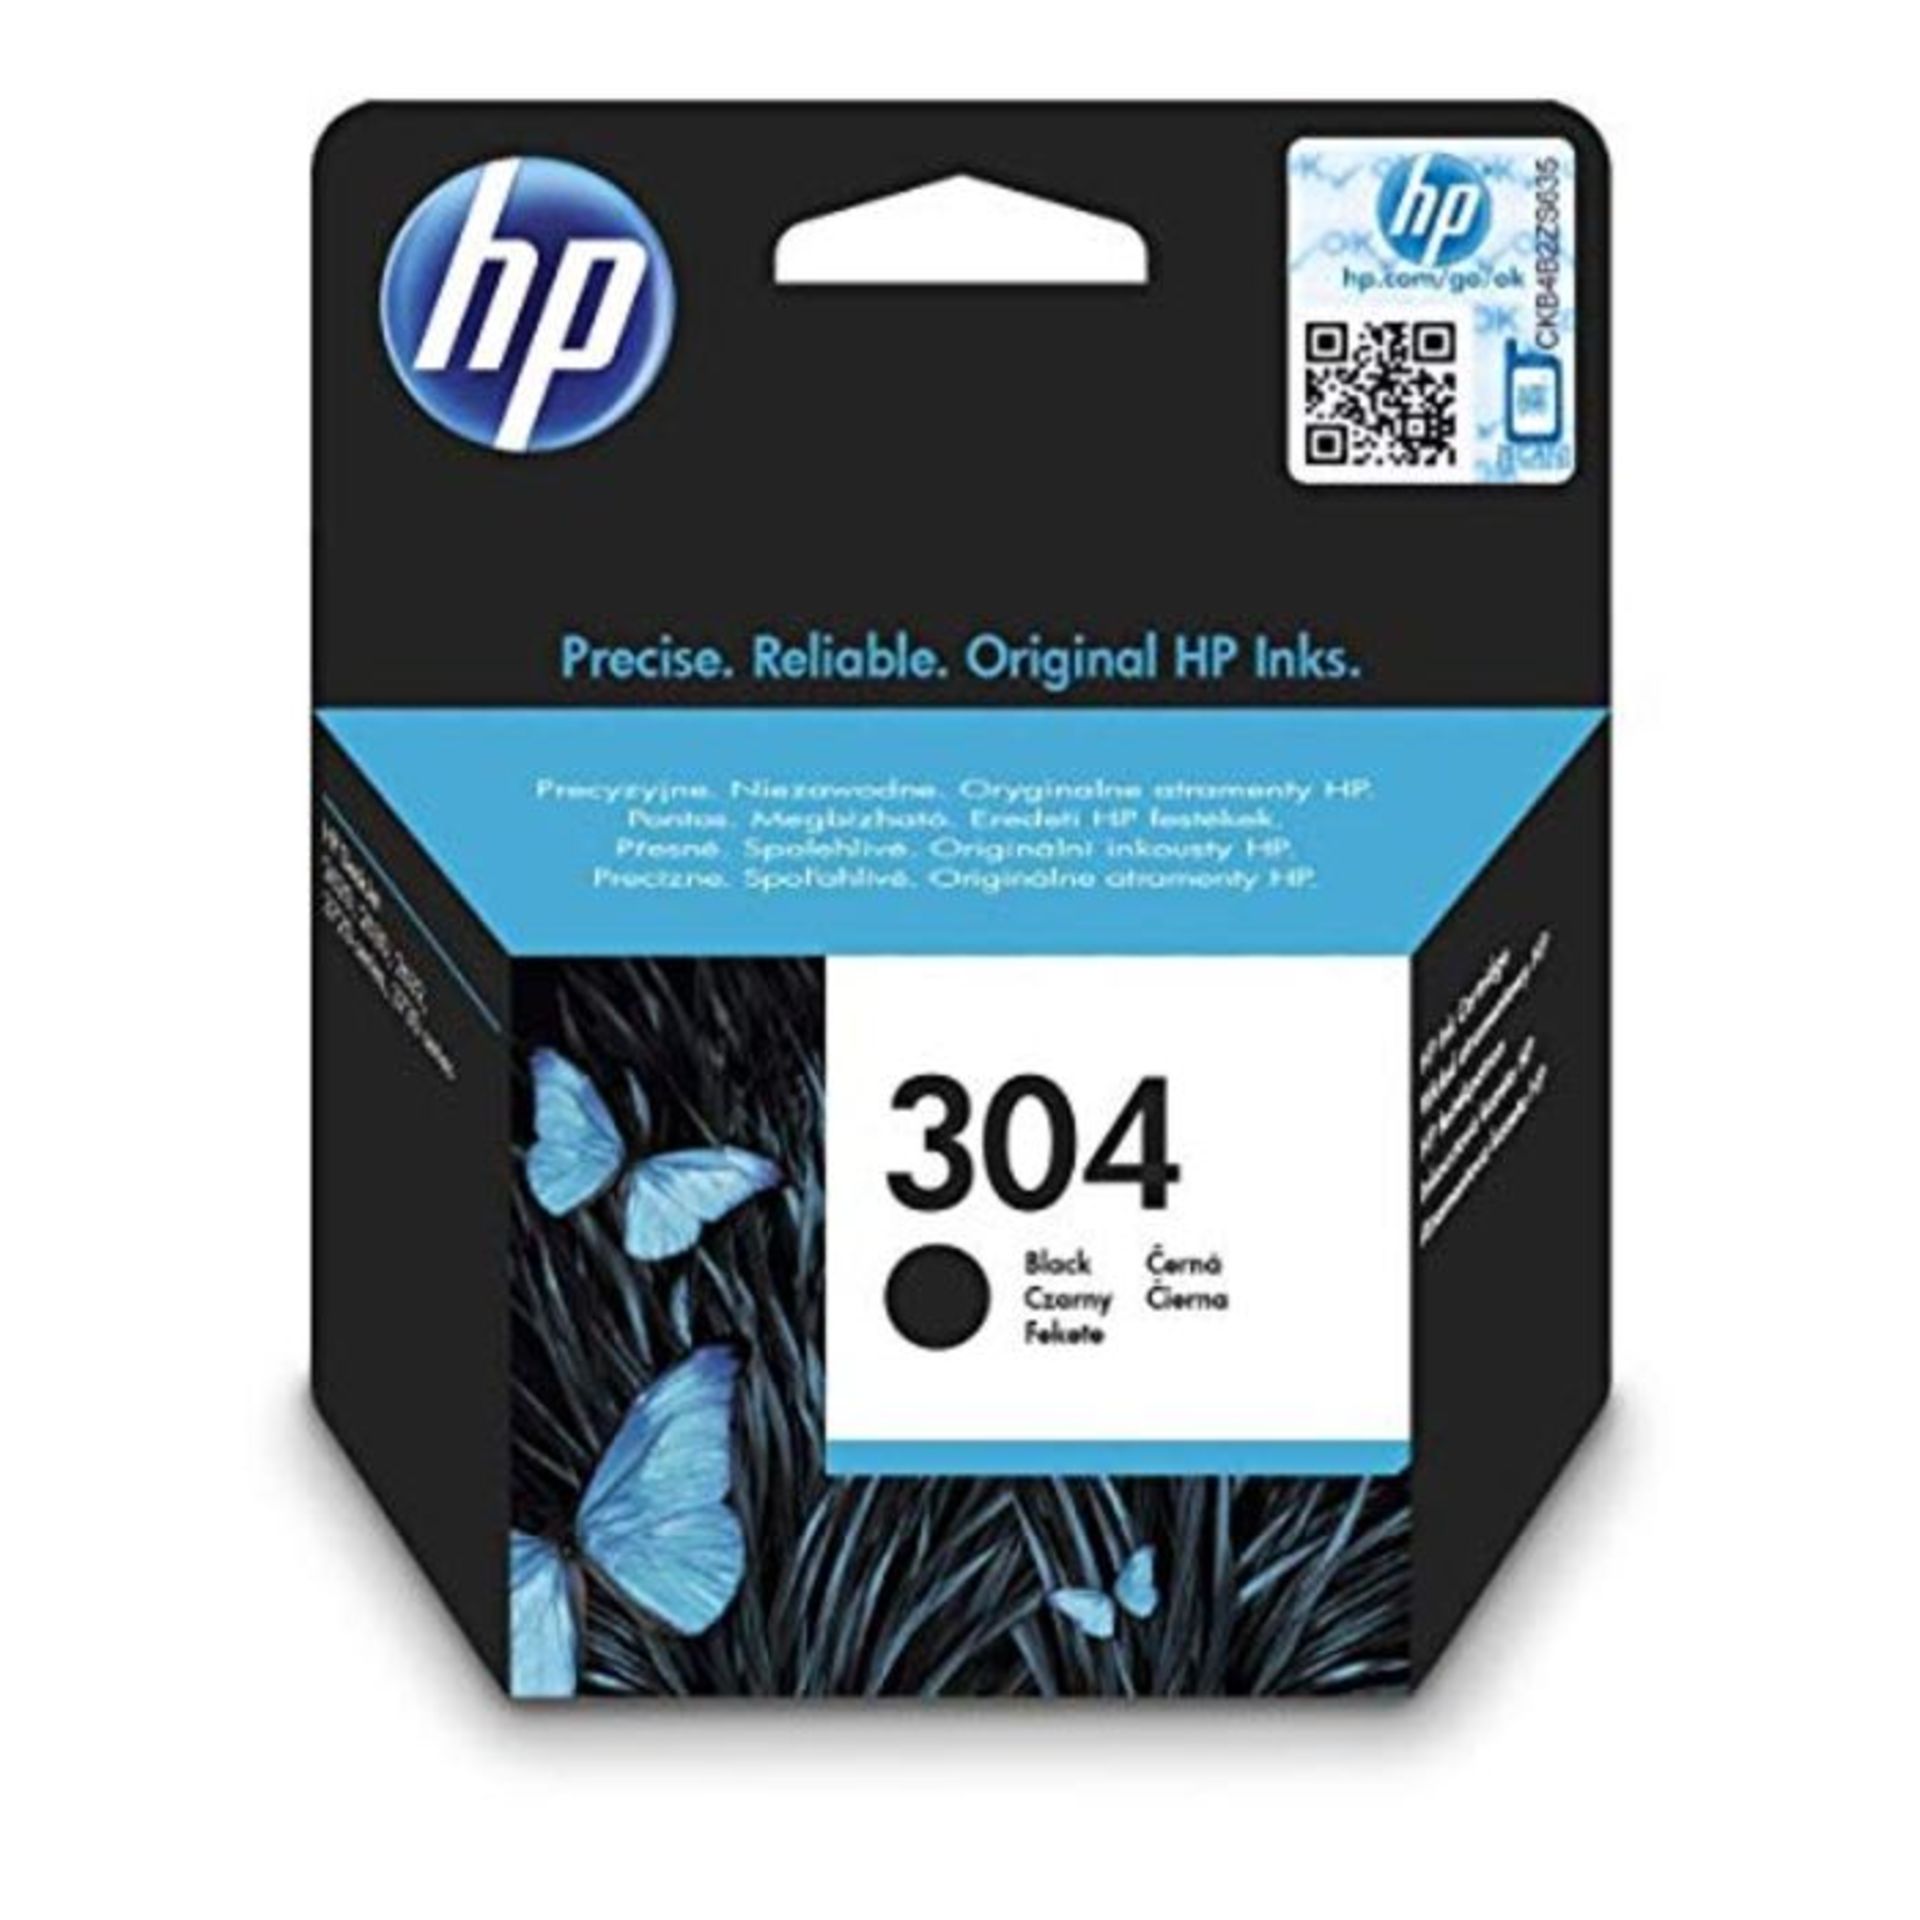 HP N9K06AE 304 Original Ink Cartridge, Black, Single Pack - Image 3 of 4